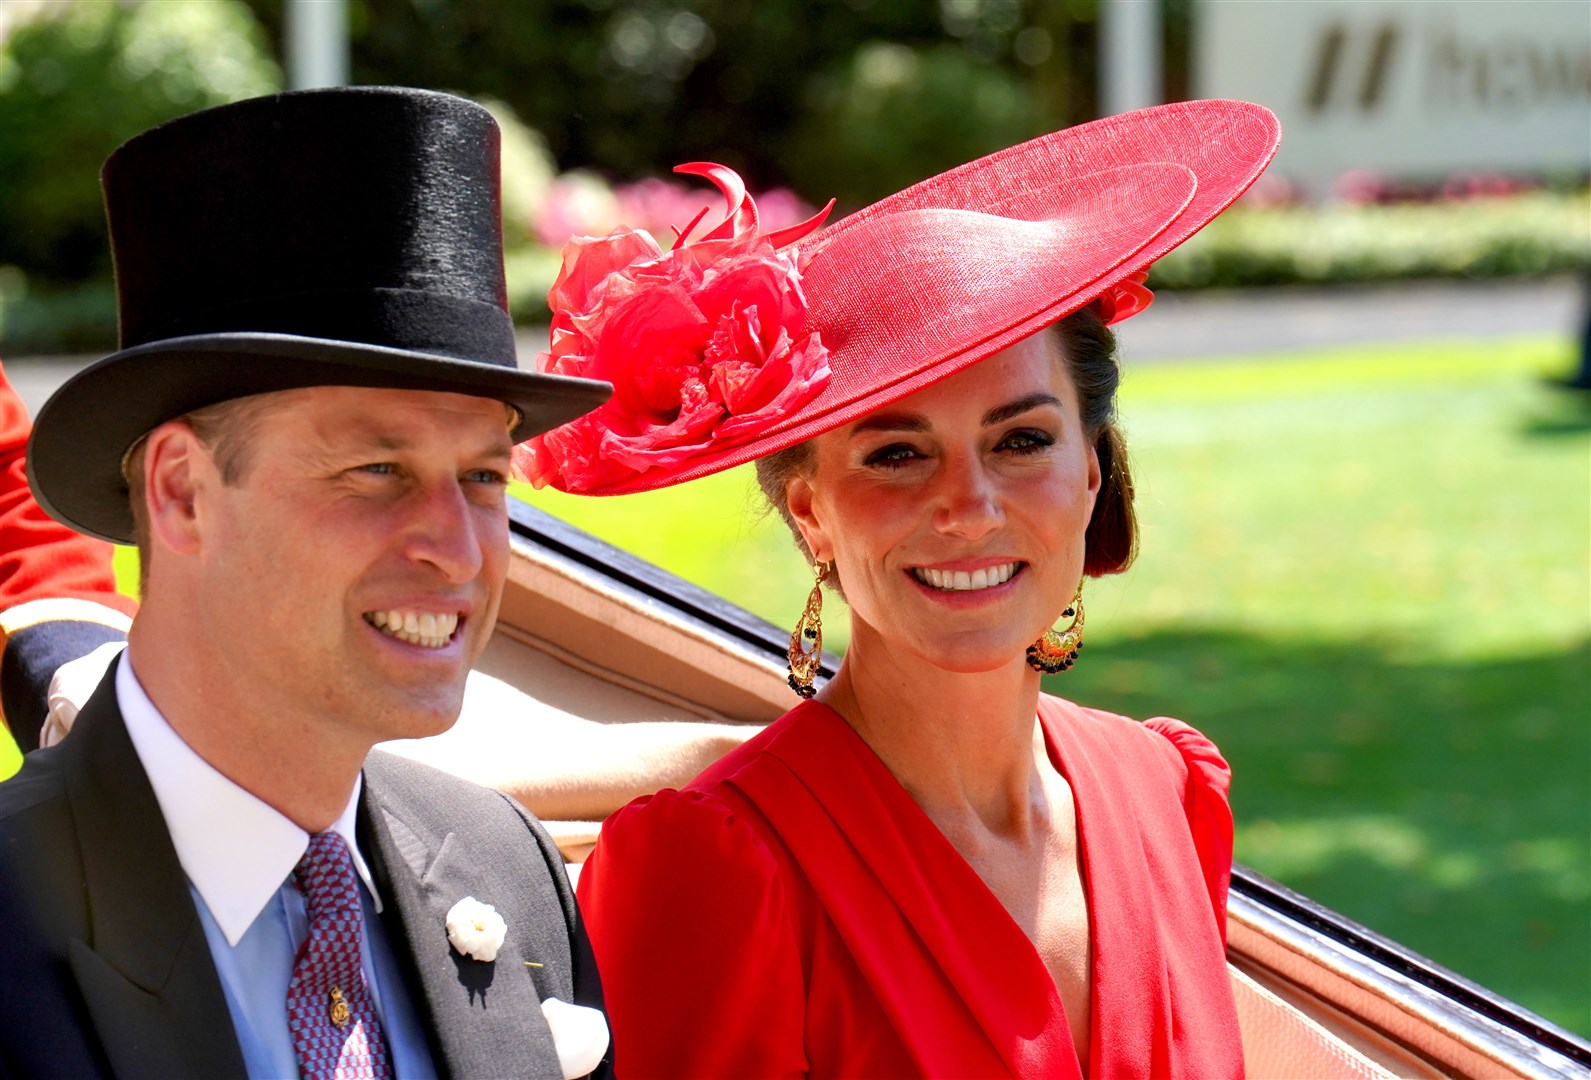 The Prince and Princess of Wales at Royal Ascot (Jonathan Brady/PA)